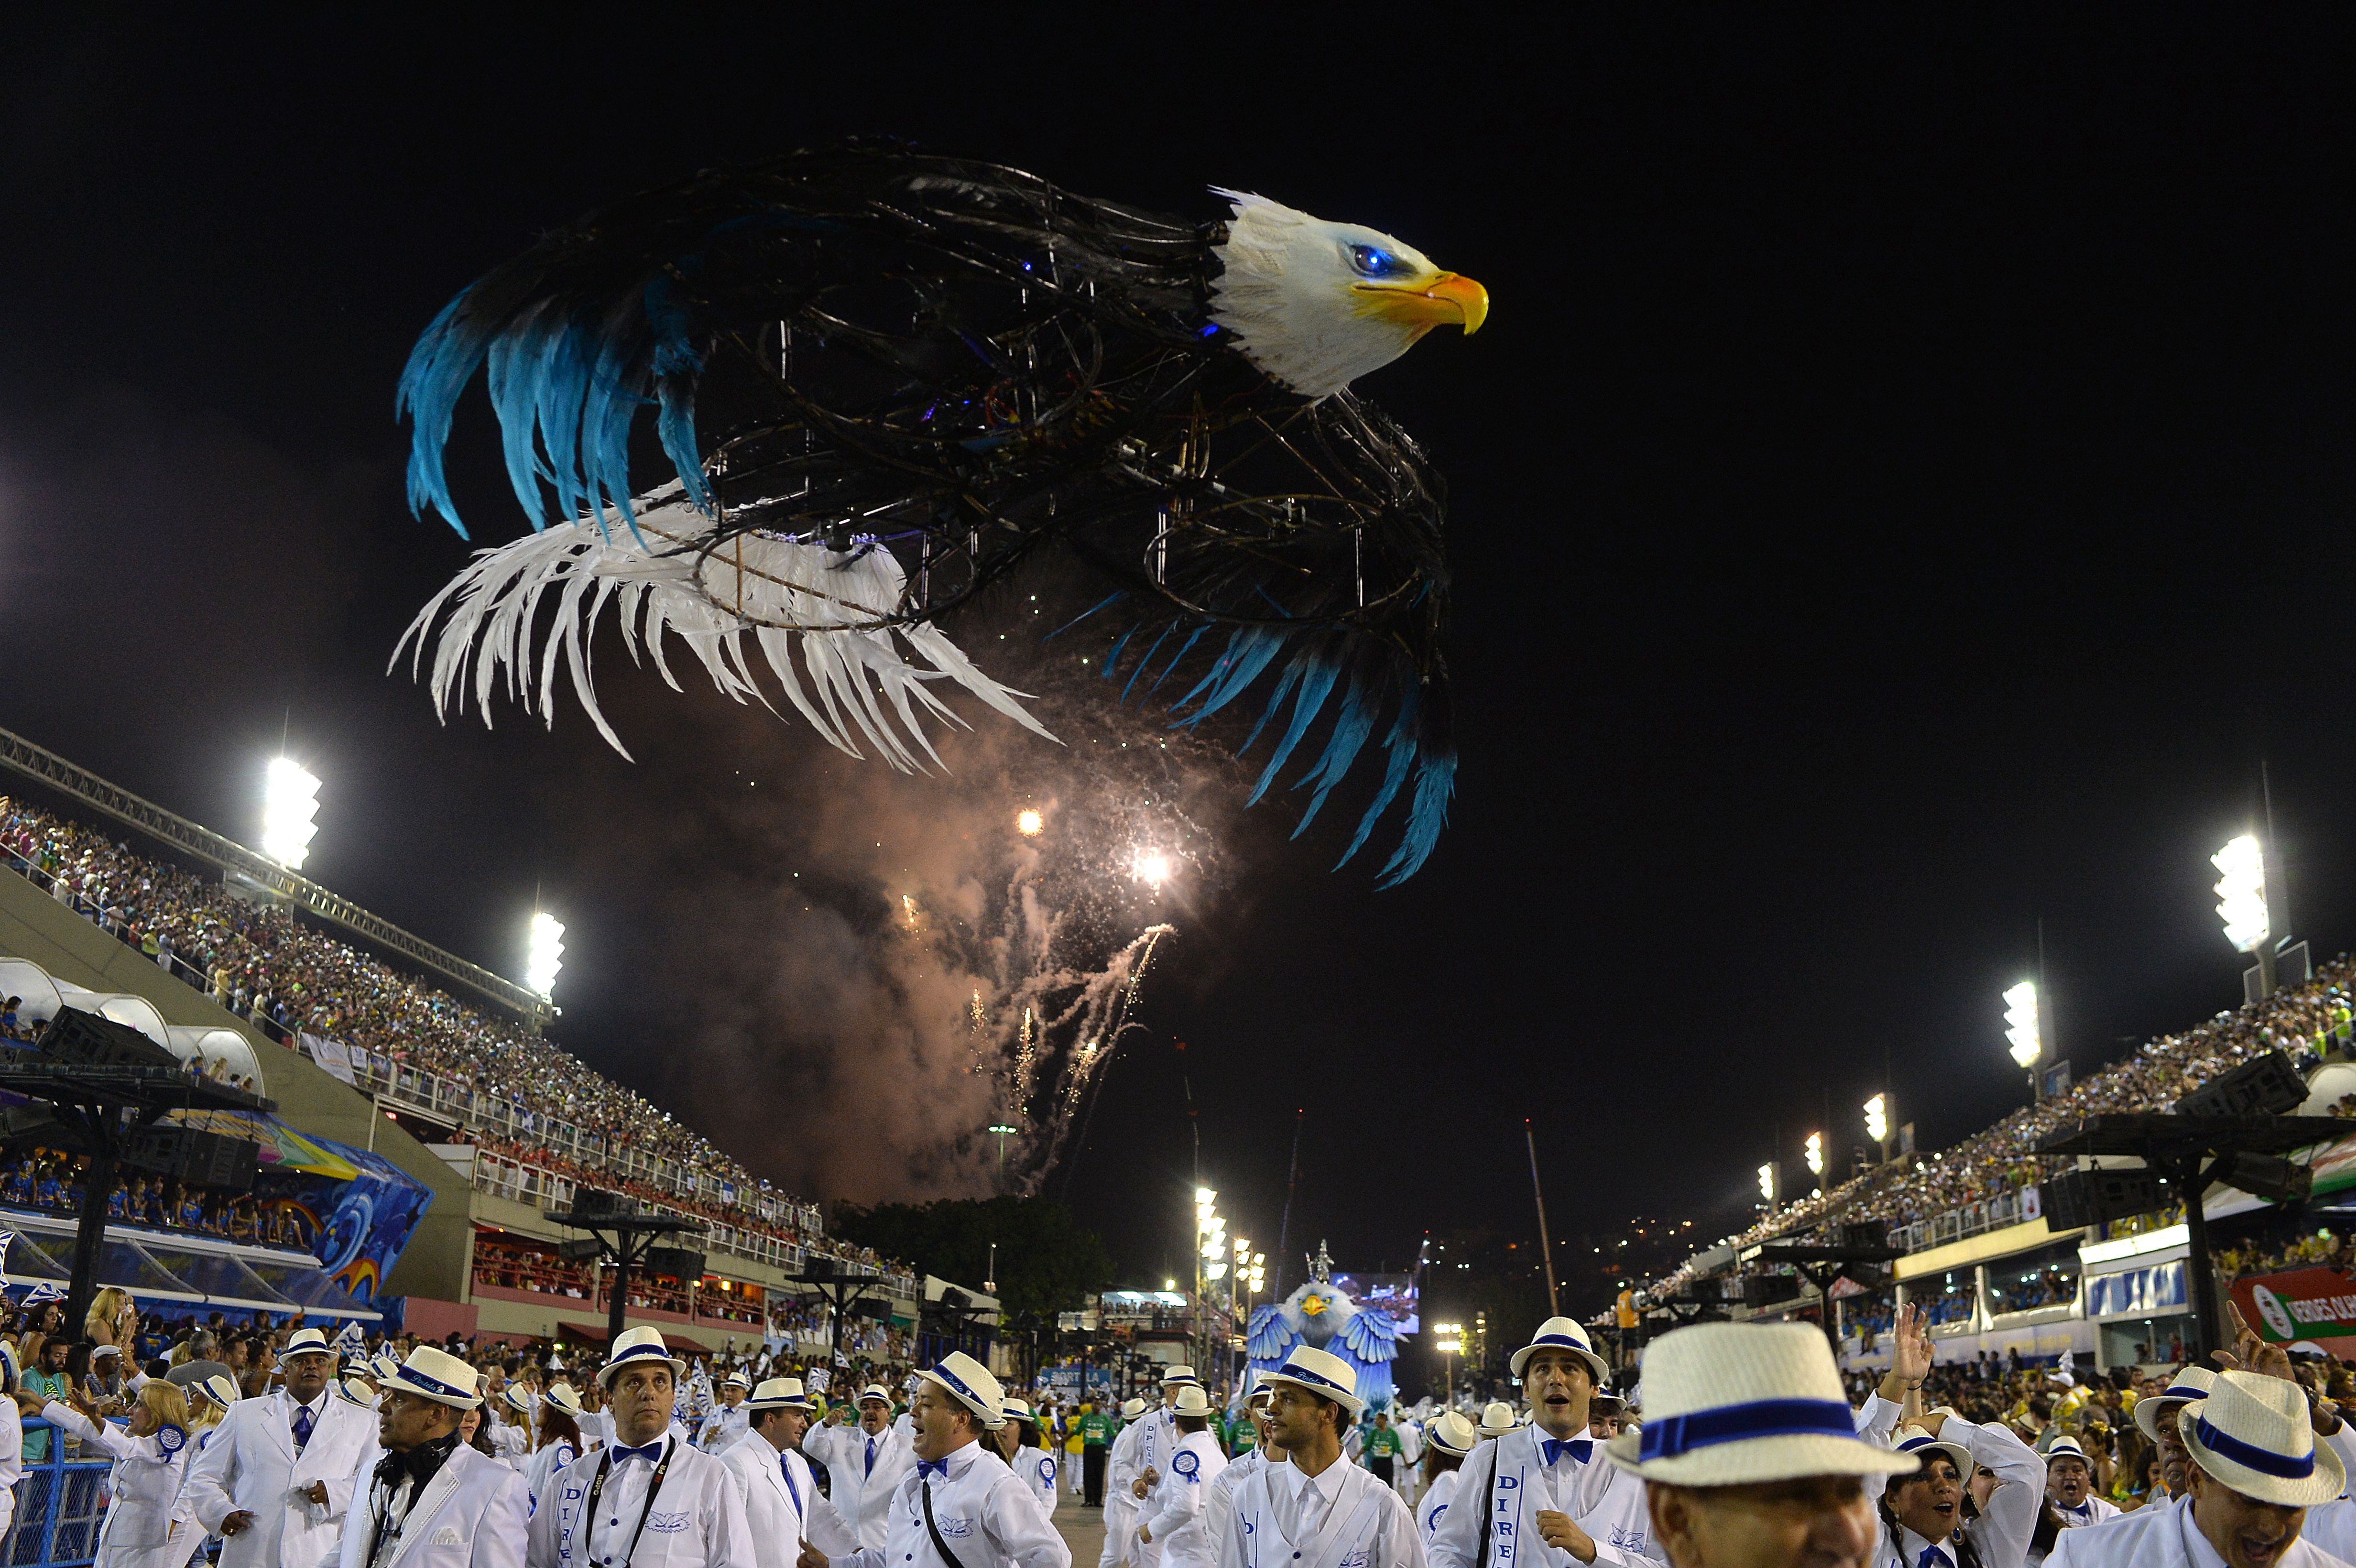 Portela inovou com drone em formato de águia / Yasuyoshi Chiba/AFP